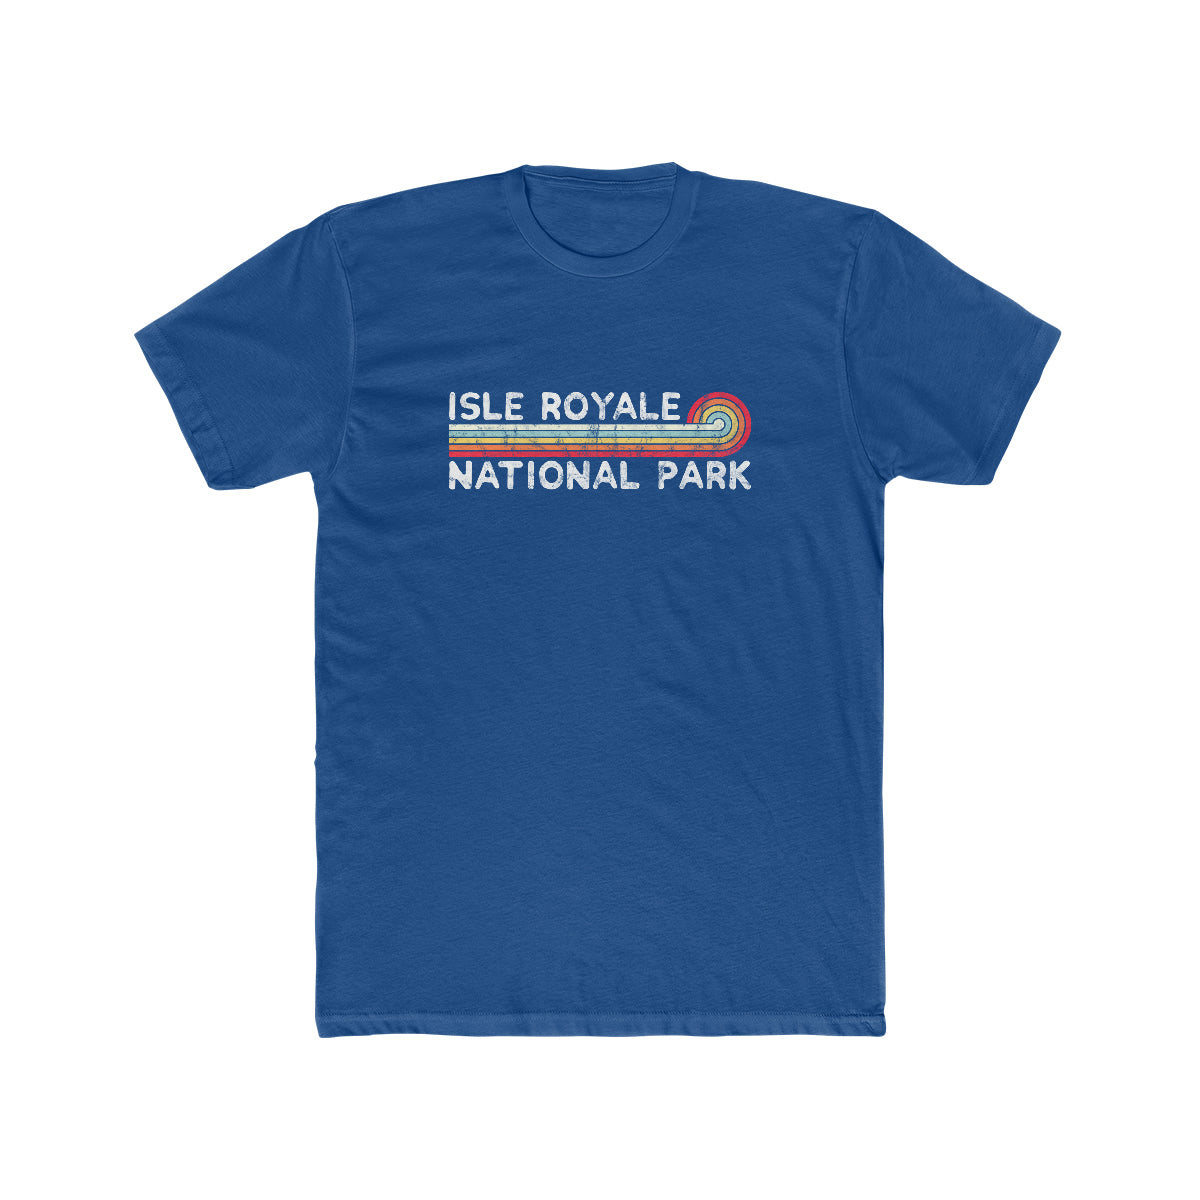 Isle Royale National Park T-Shirt - Vintage Stretched Sunrise